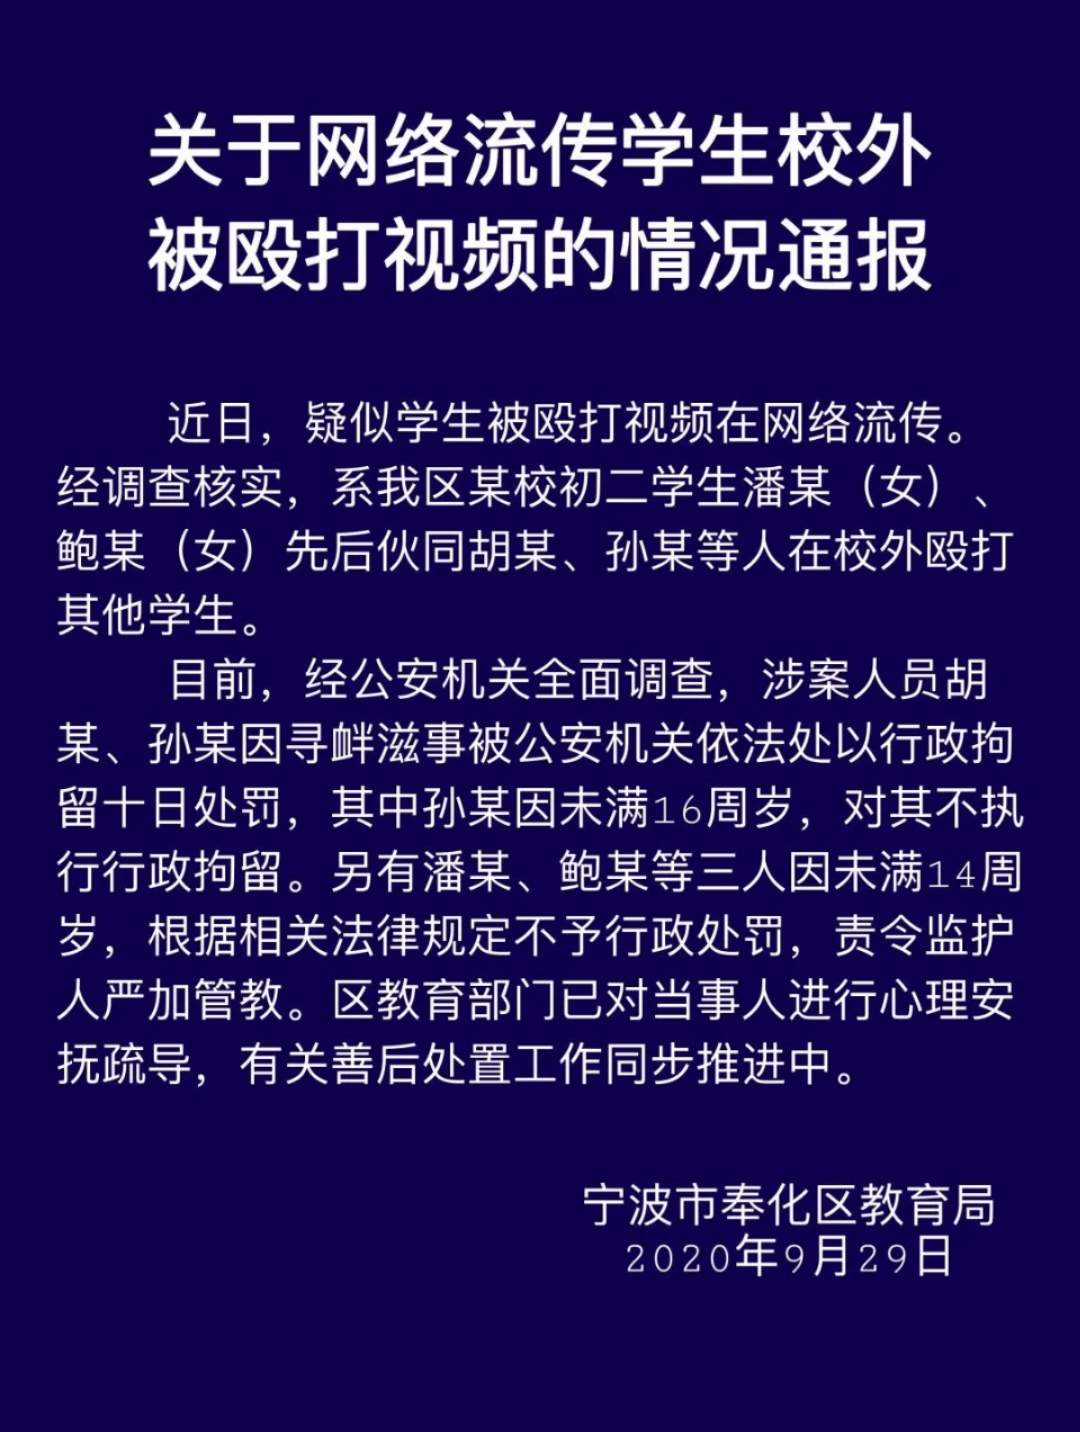 宁波市奉化区教育局发布的《关于网络流传学生校外被殴打视频的情况通报》 图片来源：微信公众号“奉化教育通”